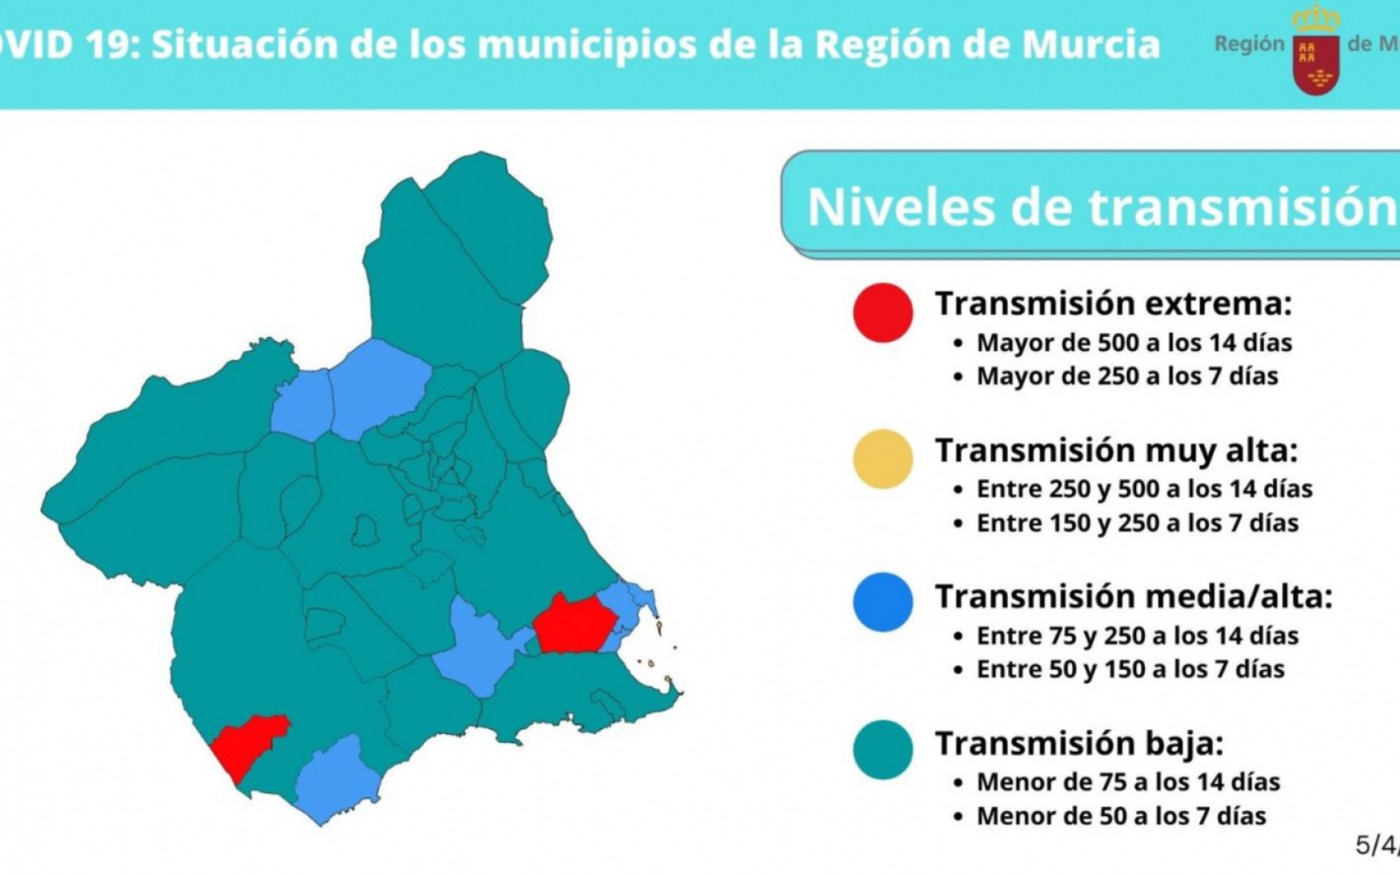 Así quedan las nuevas restricciones por municipios en la Región de Murcia